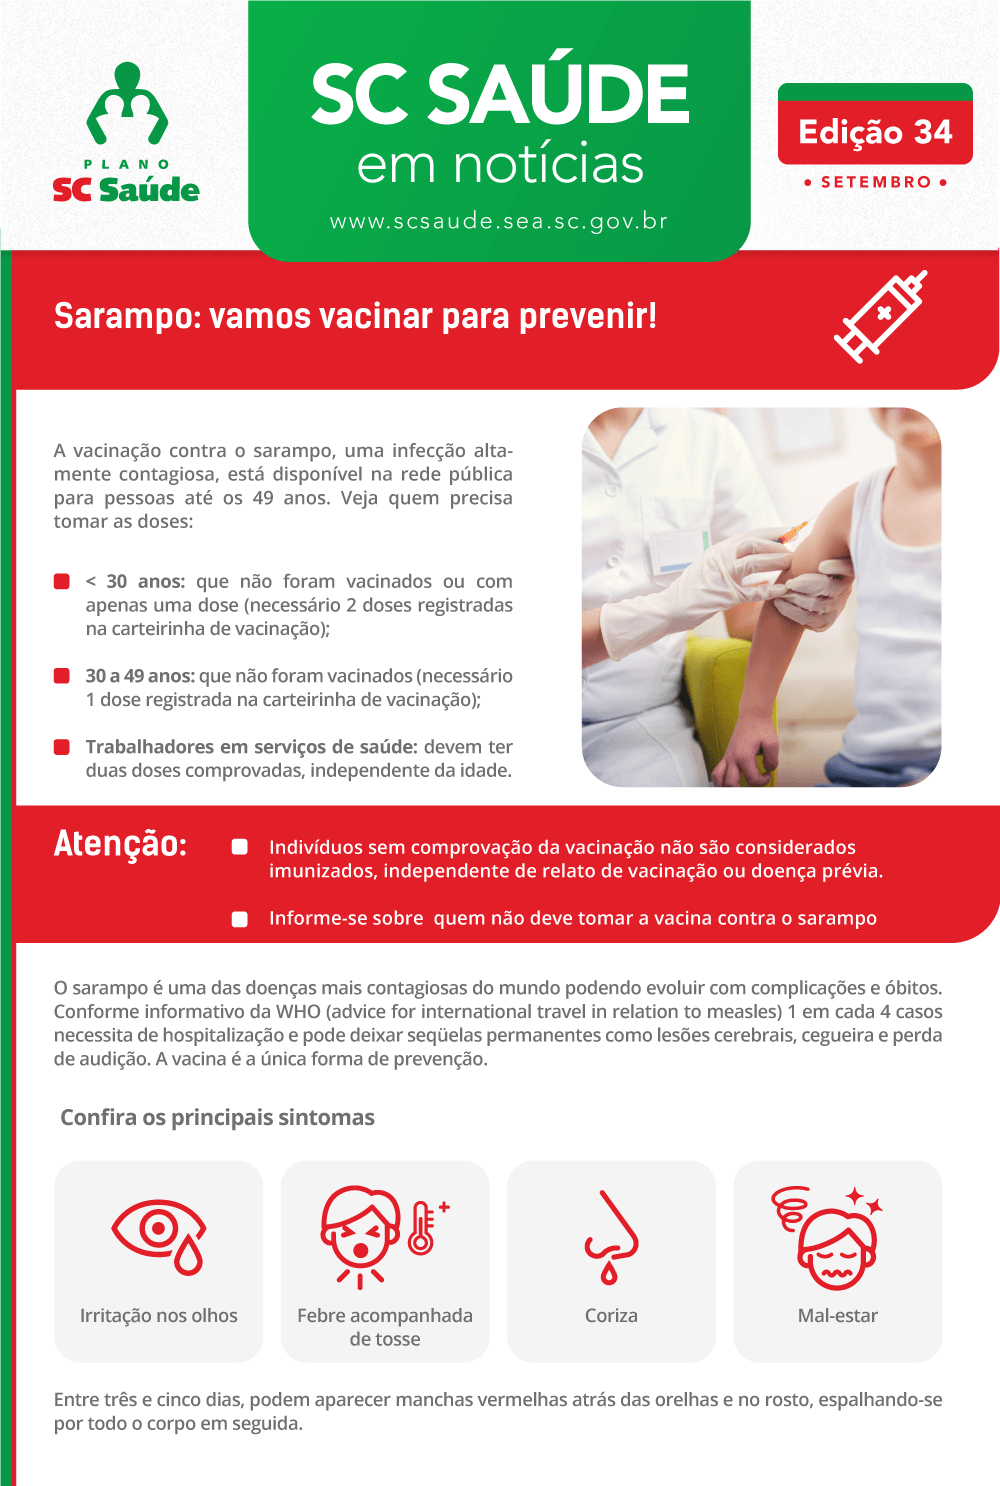 Edição 34 – Sarampo: vamos vacinar para prevenir!